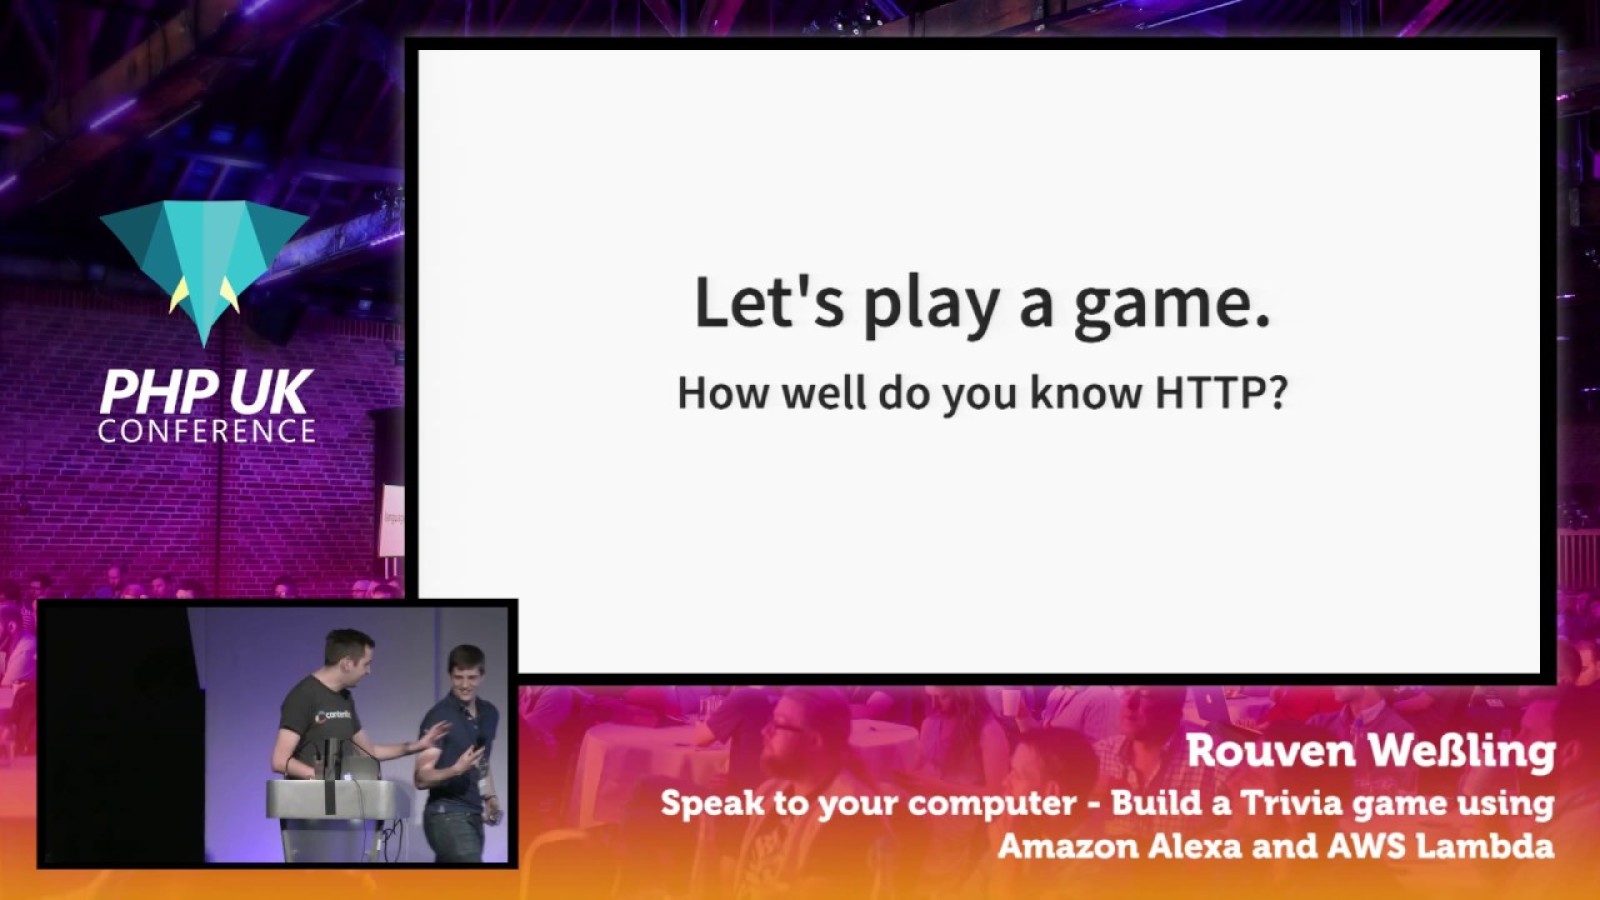 Speak to your computer - Build a Trivia game using Amazon Alexa and AWS Lambda